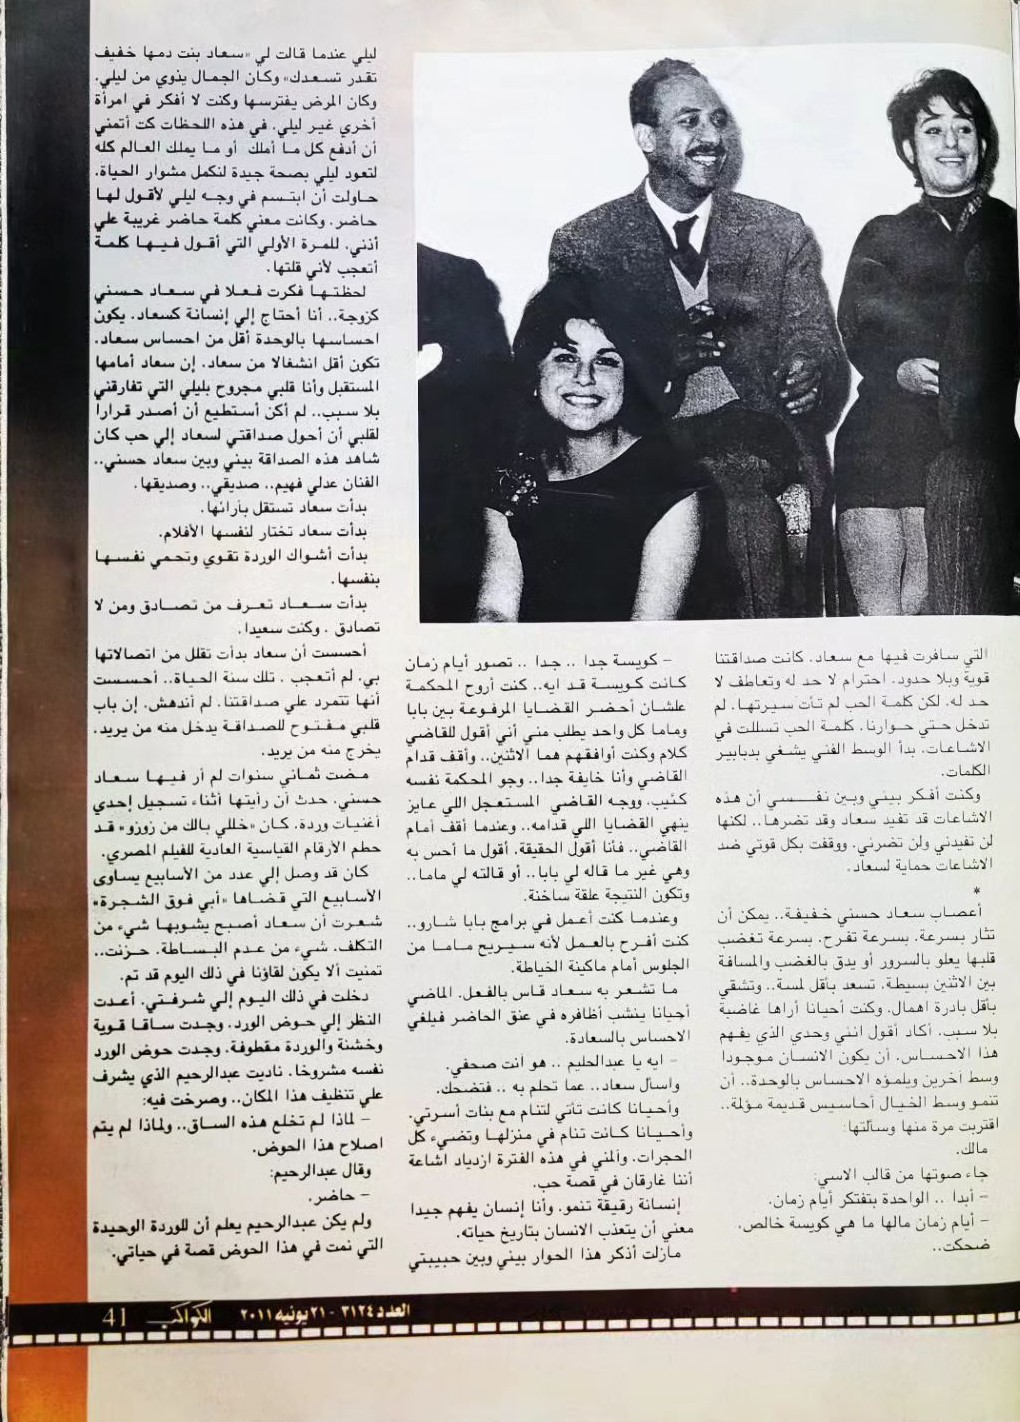 صحفي - مقال صحفي : حليم .. نعم أحببت سعاد حسني ولكن ..!! 2011 م 415